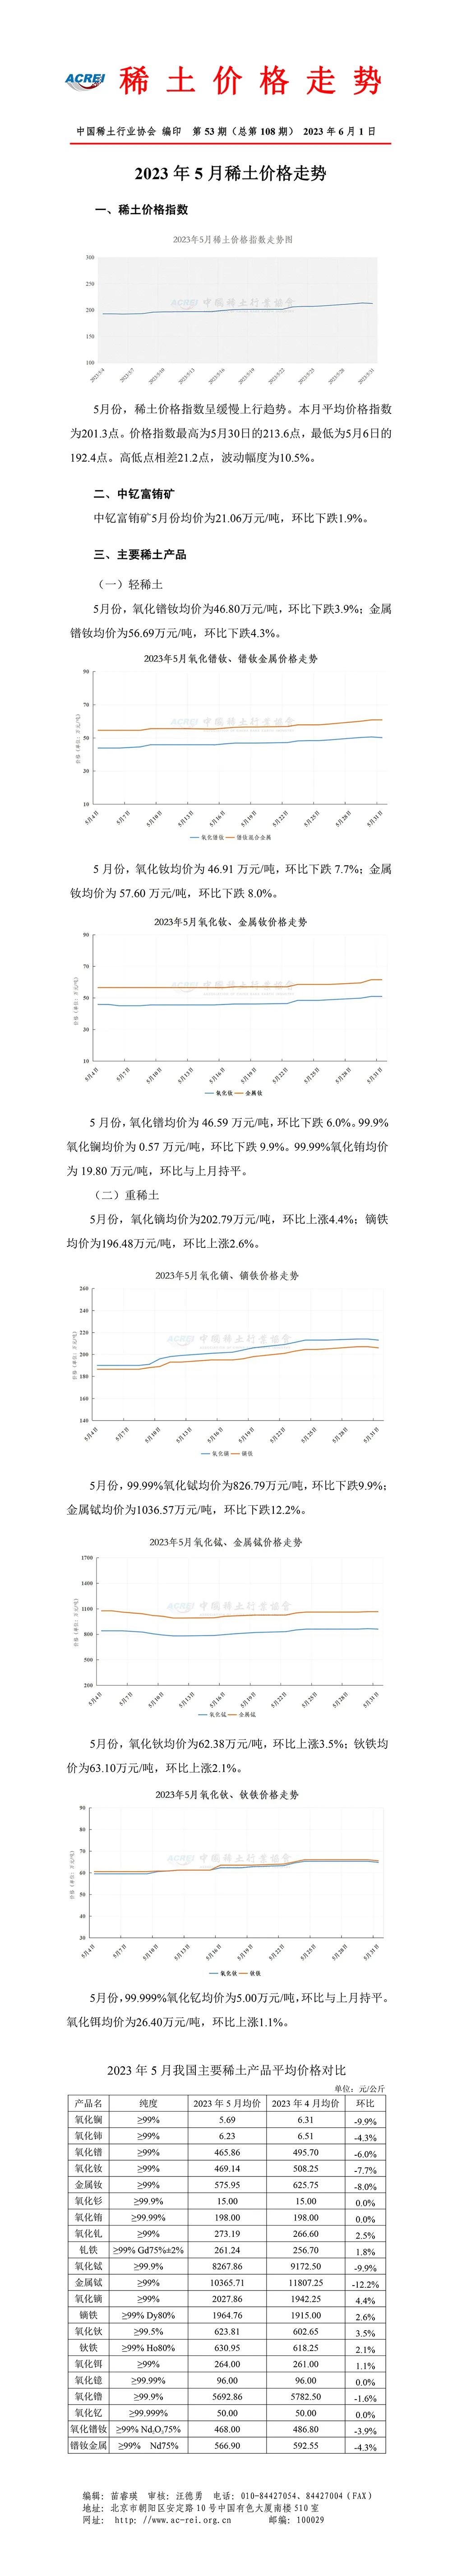 中国稀土行业协会：5月份稀土价格指数呈缓慢上行趋势